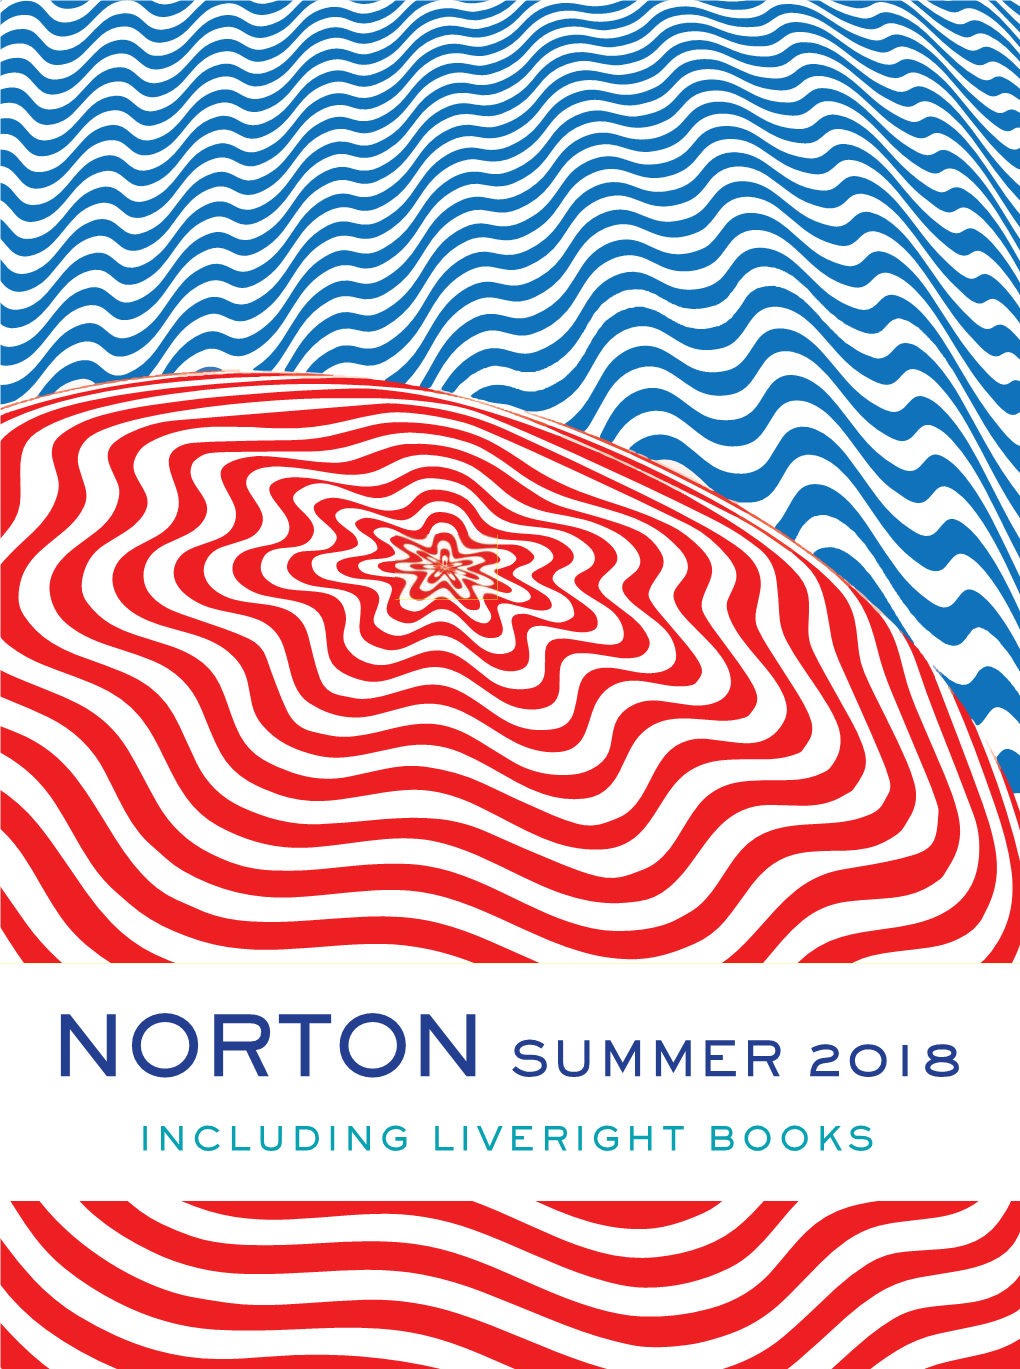 W. W. Norton Summer 2018